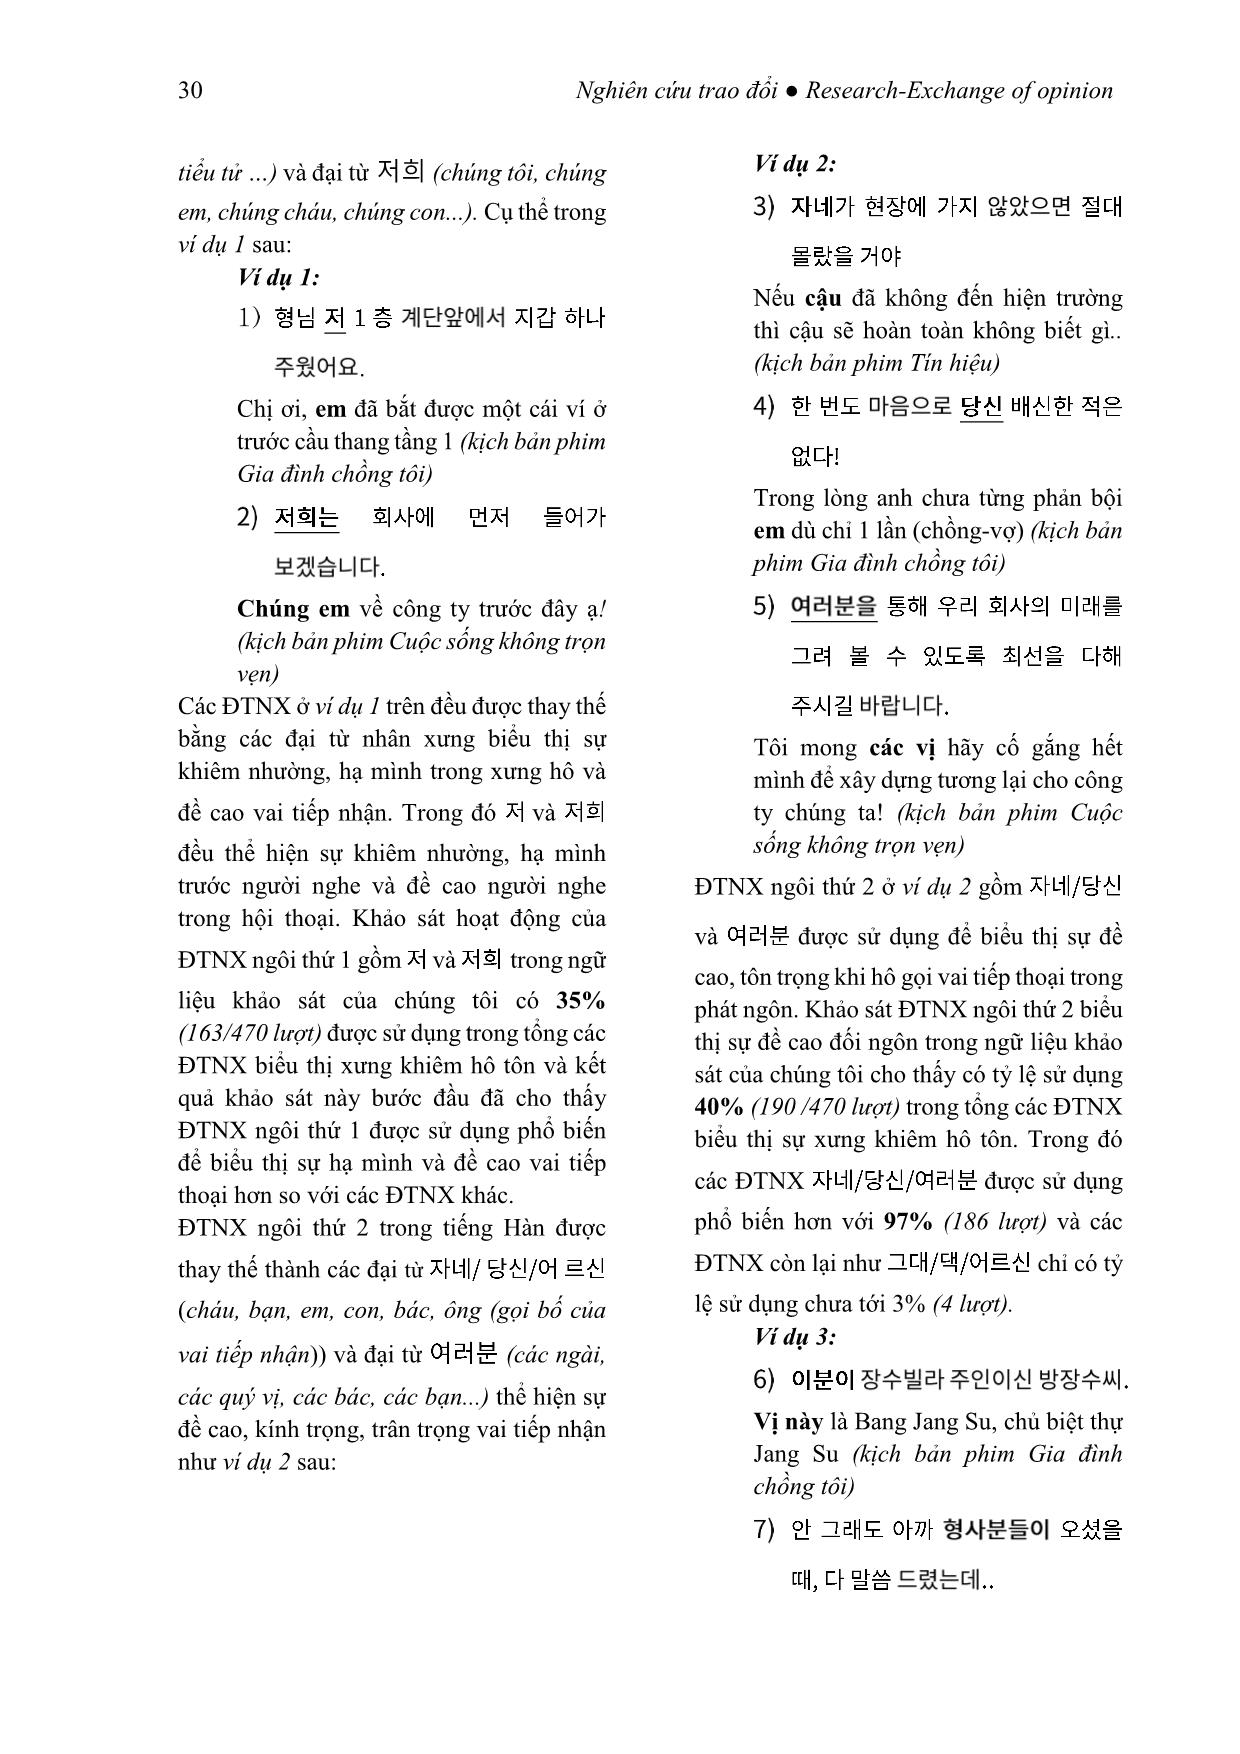 Kính ngữ tiếng Hàn qua phương thức thay thế từ vựng (Xét trong mối tương quan với tiếng Việt) trang 4